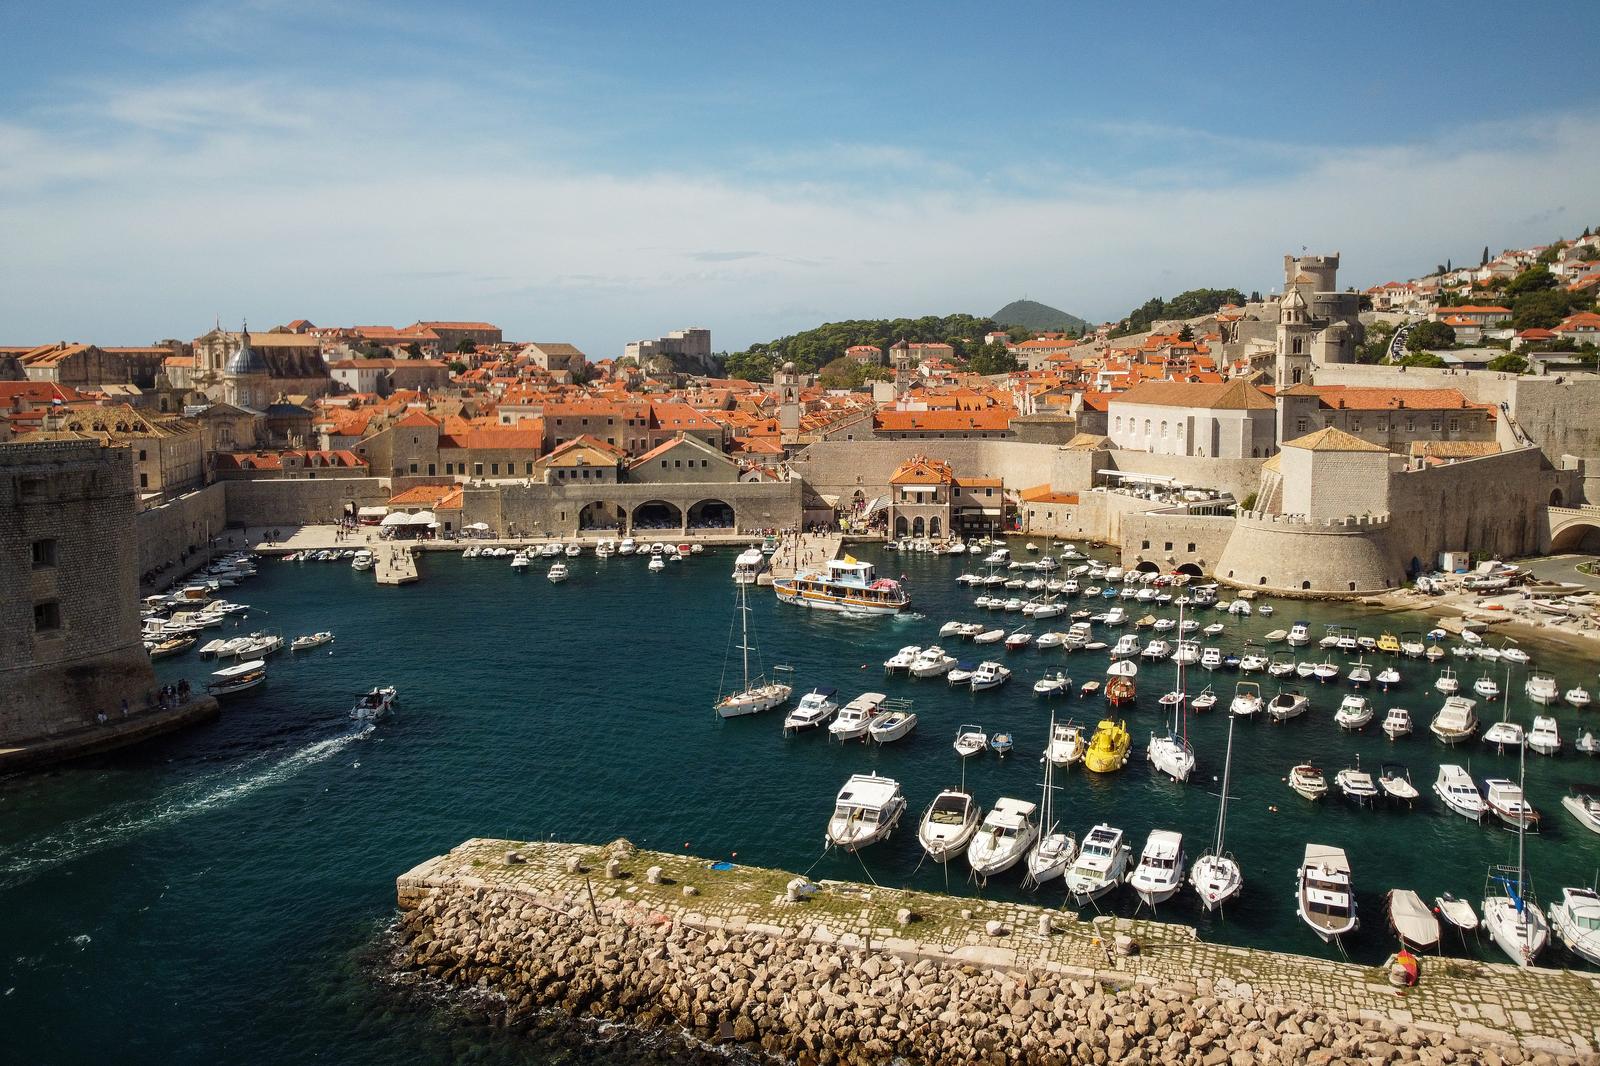 30.09.2022., Dubrovnik - Zracna fotografija stare jezgre grada Dubrovnika. Photo: Luka Stanzl/PIXSELL